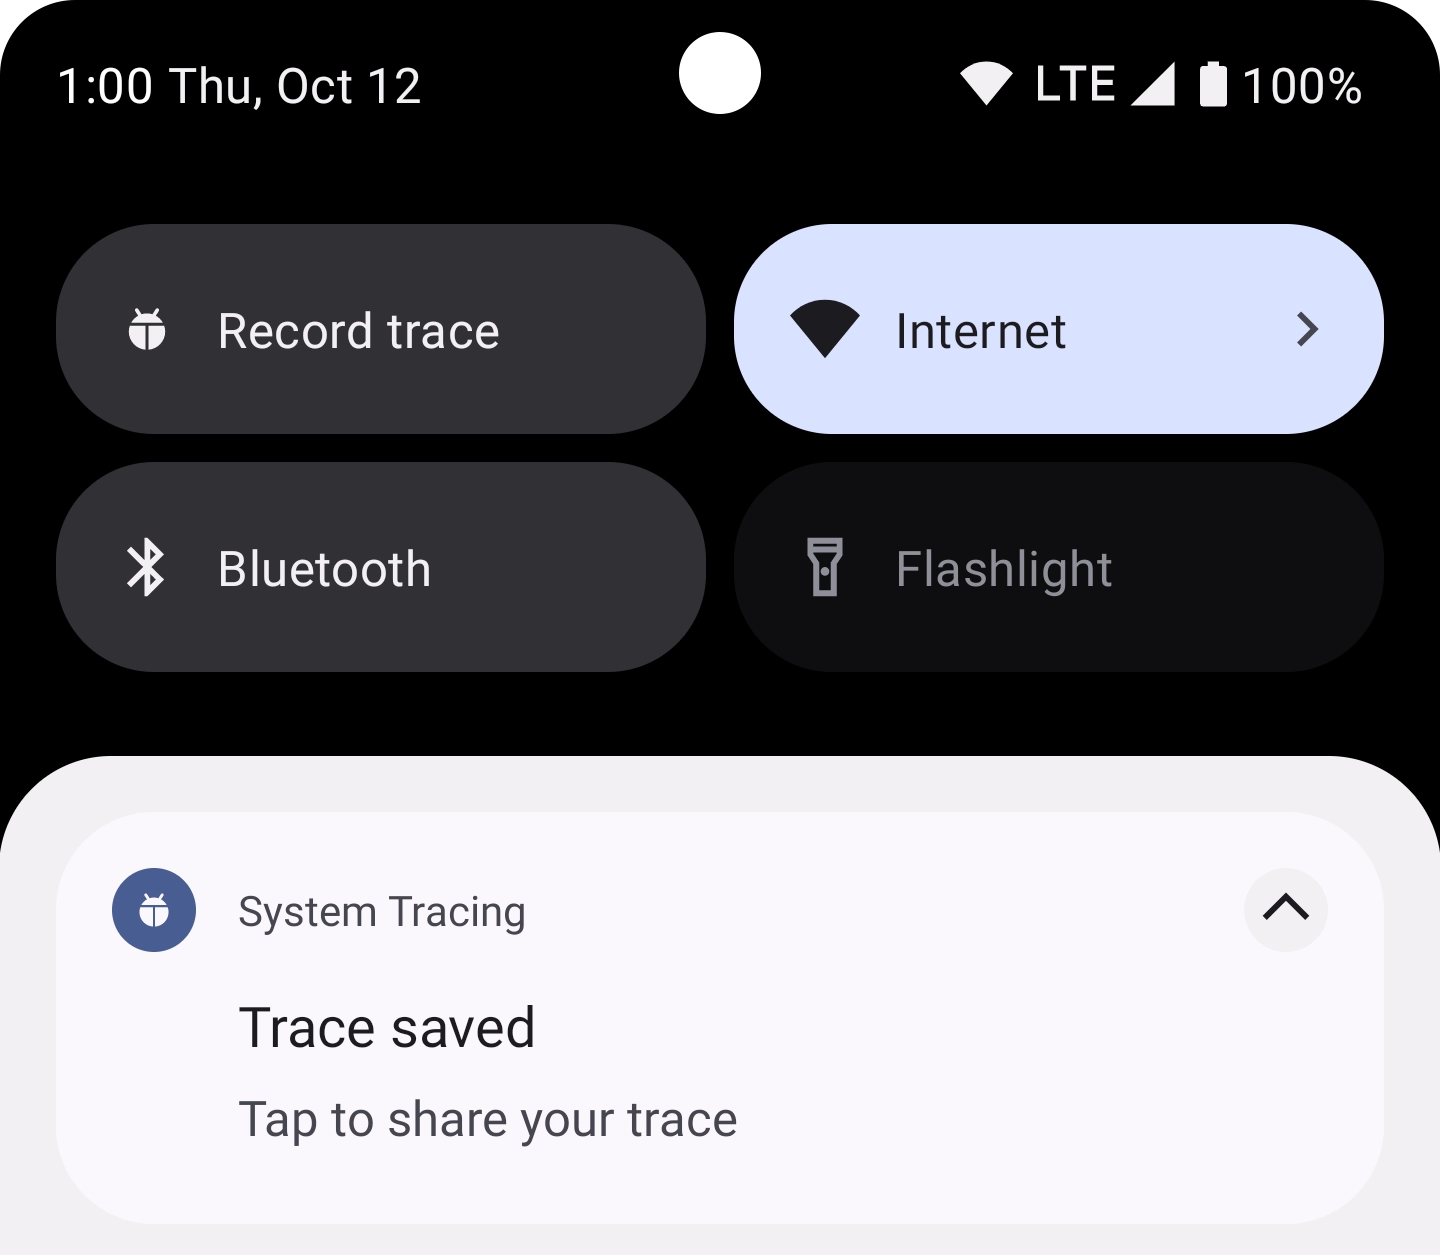 Notification avec le message "Trace saved. Tap to share your trace." (Trace enregistrée. Appuyez pour partager votre trace.)